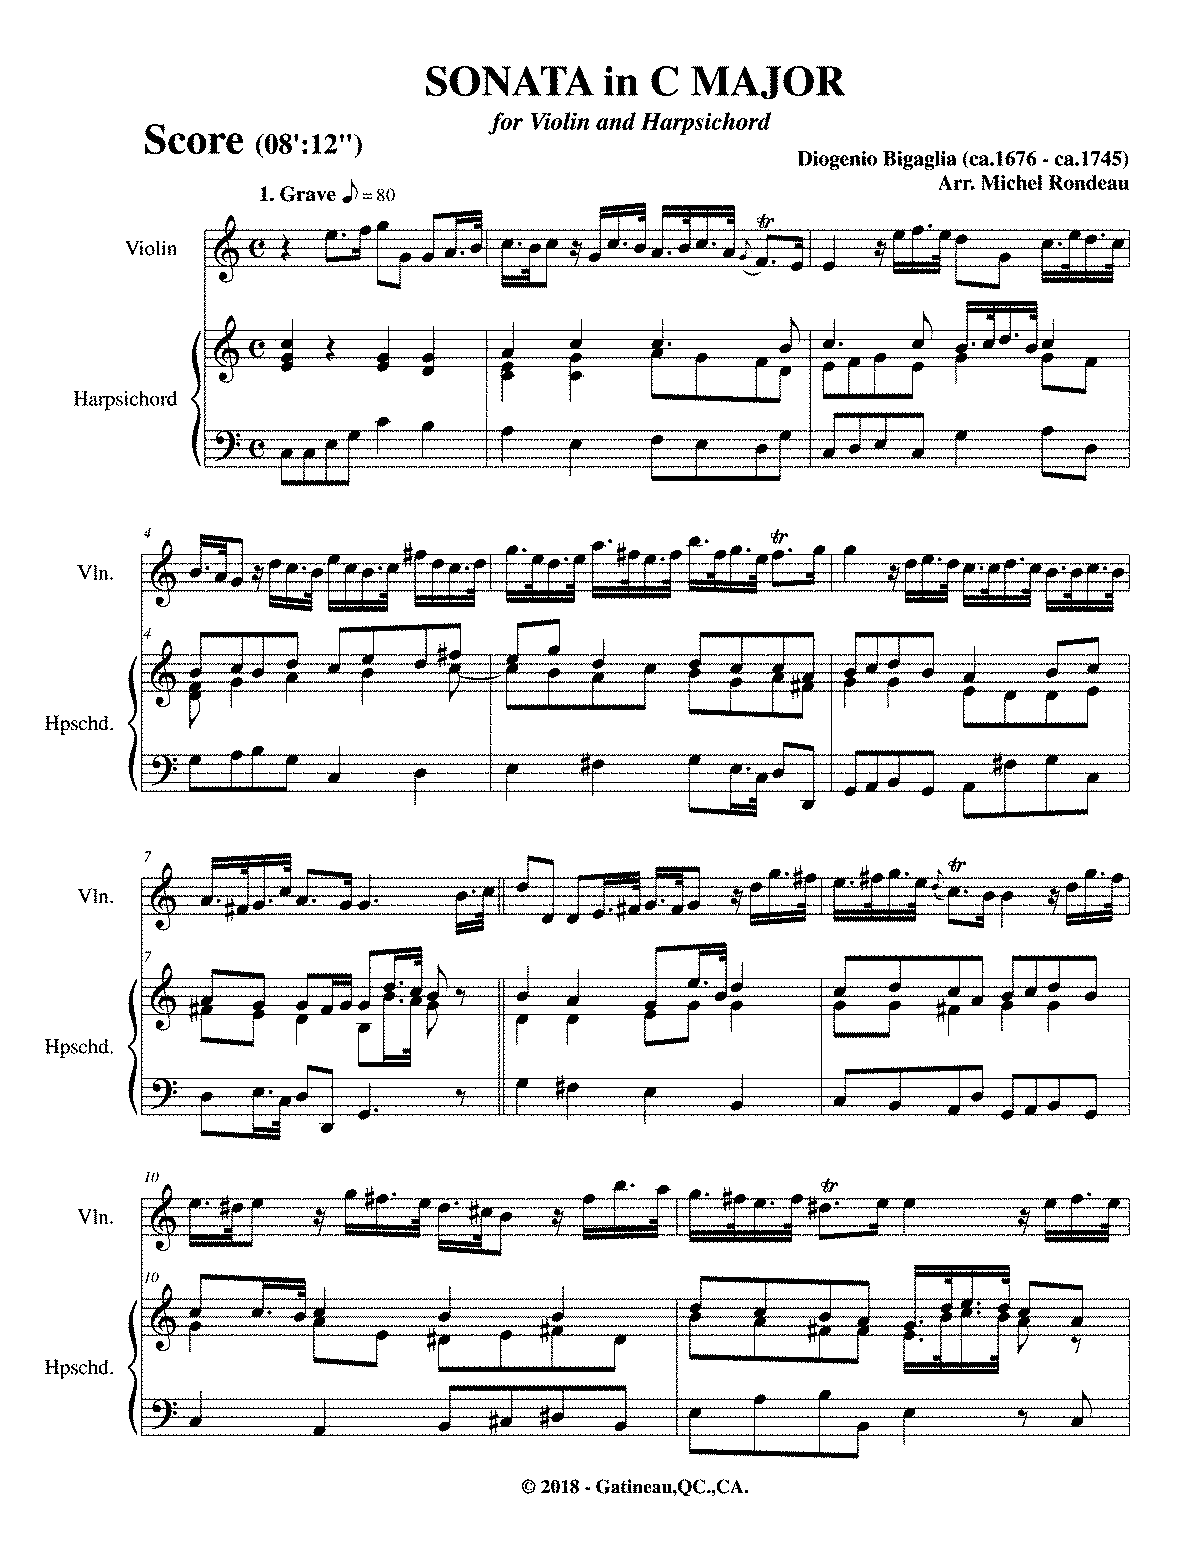 Violin Sonata in C major (Bigaglia, Diogenio) - IMSLP